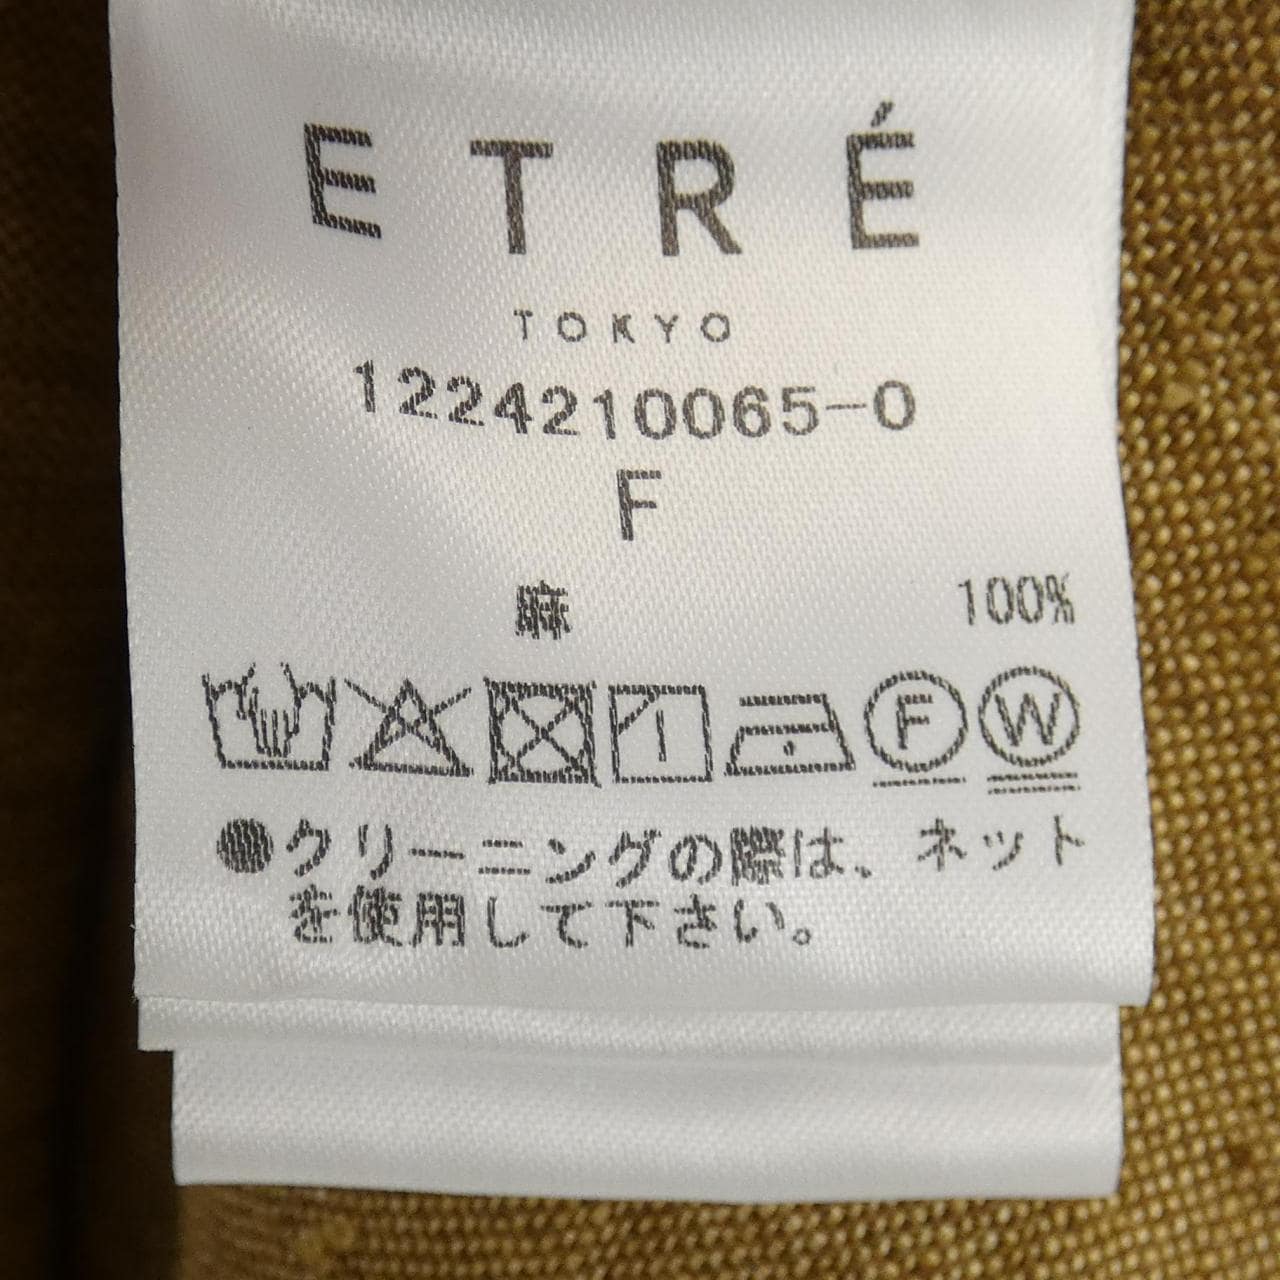 エトレトウキョウ ETRE TOKYO シャツ